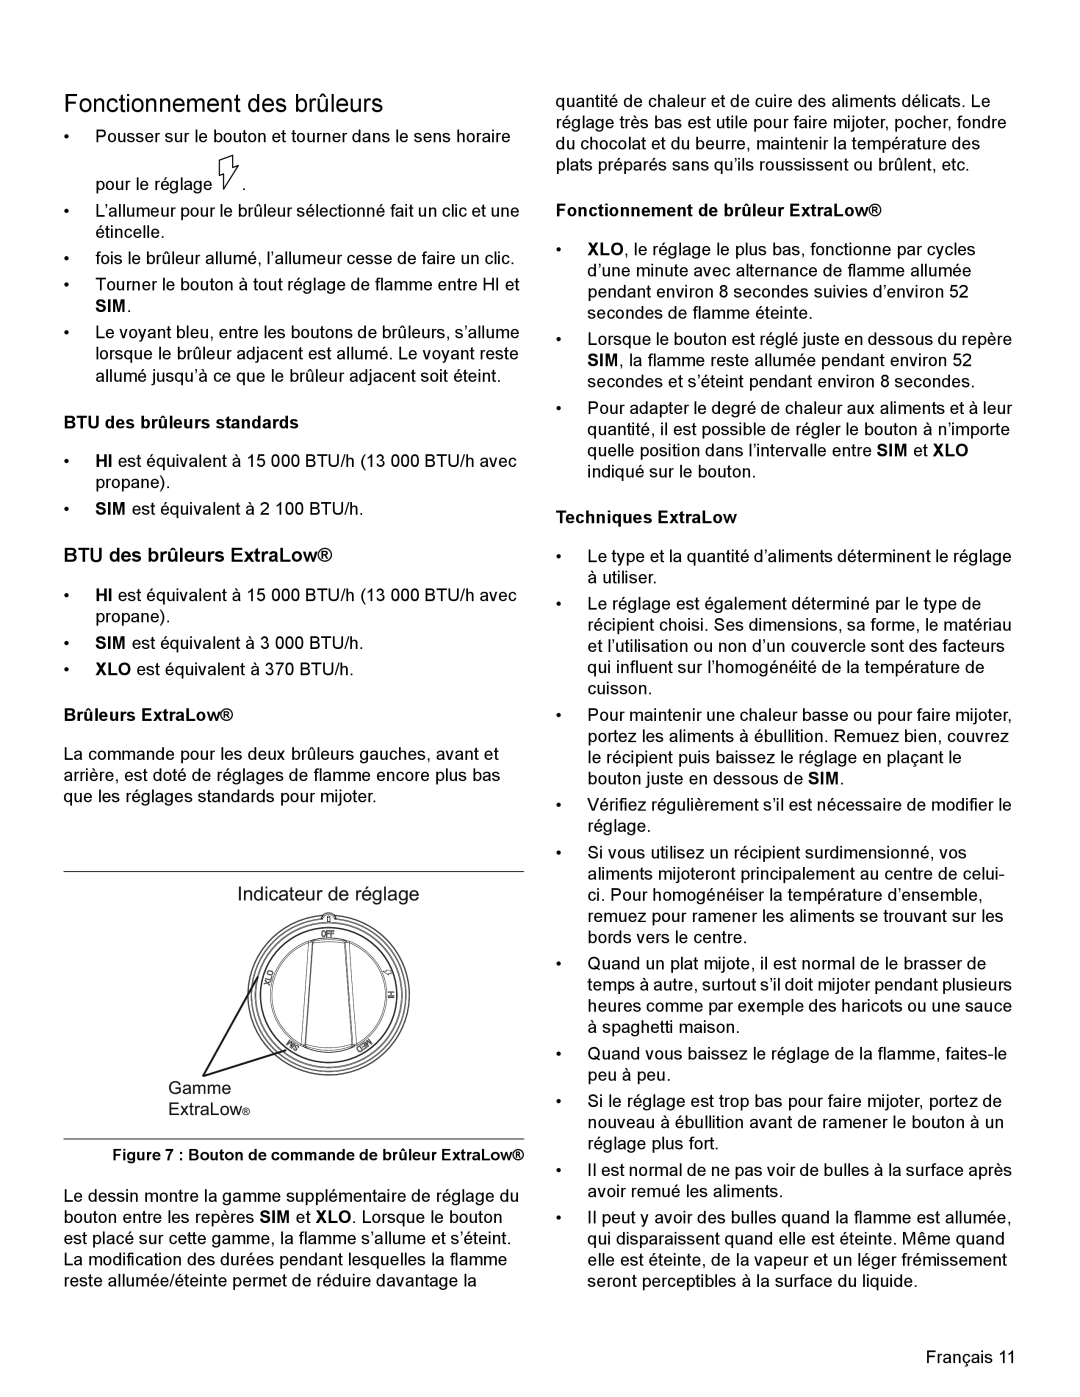 Thermador PRG30, PRL36, PRL30 manual Fonctionnement des brûleurs, BTU des brûleurs ExtraLow, Indicateur de réglage 